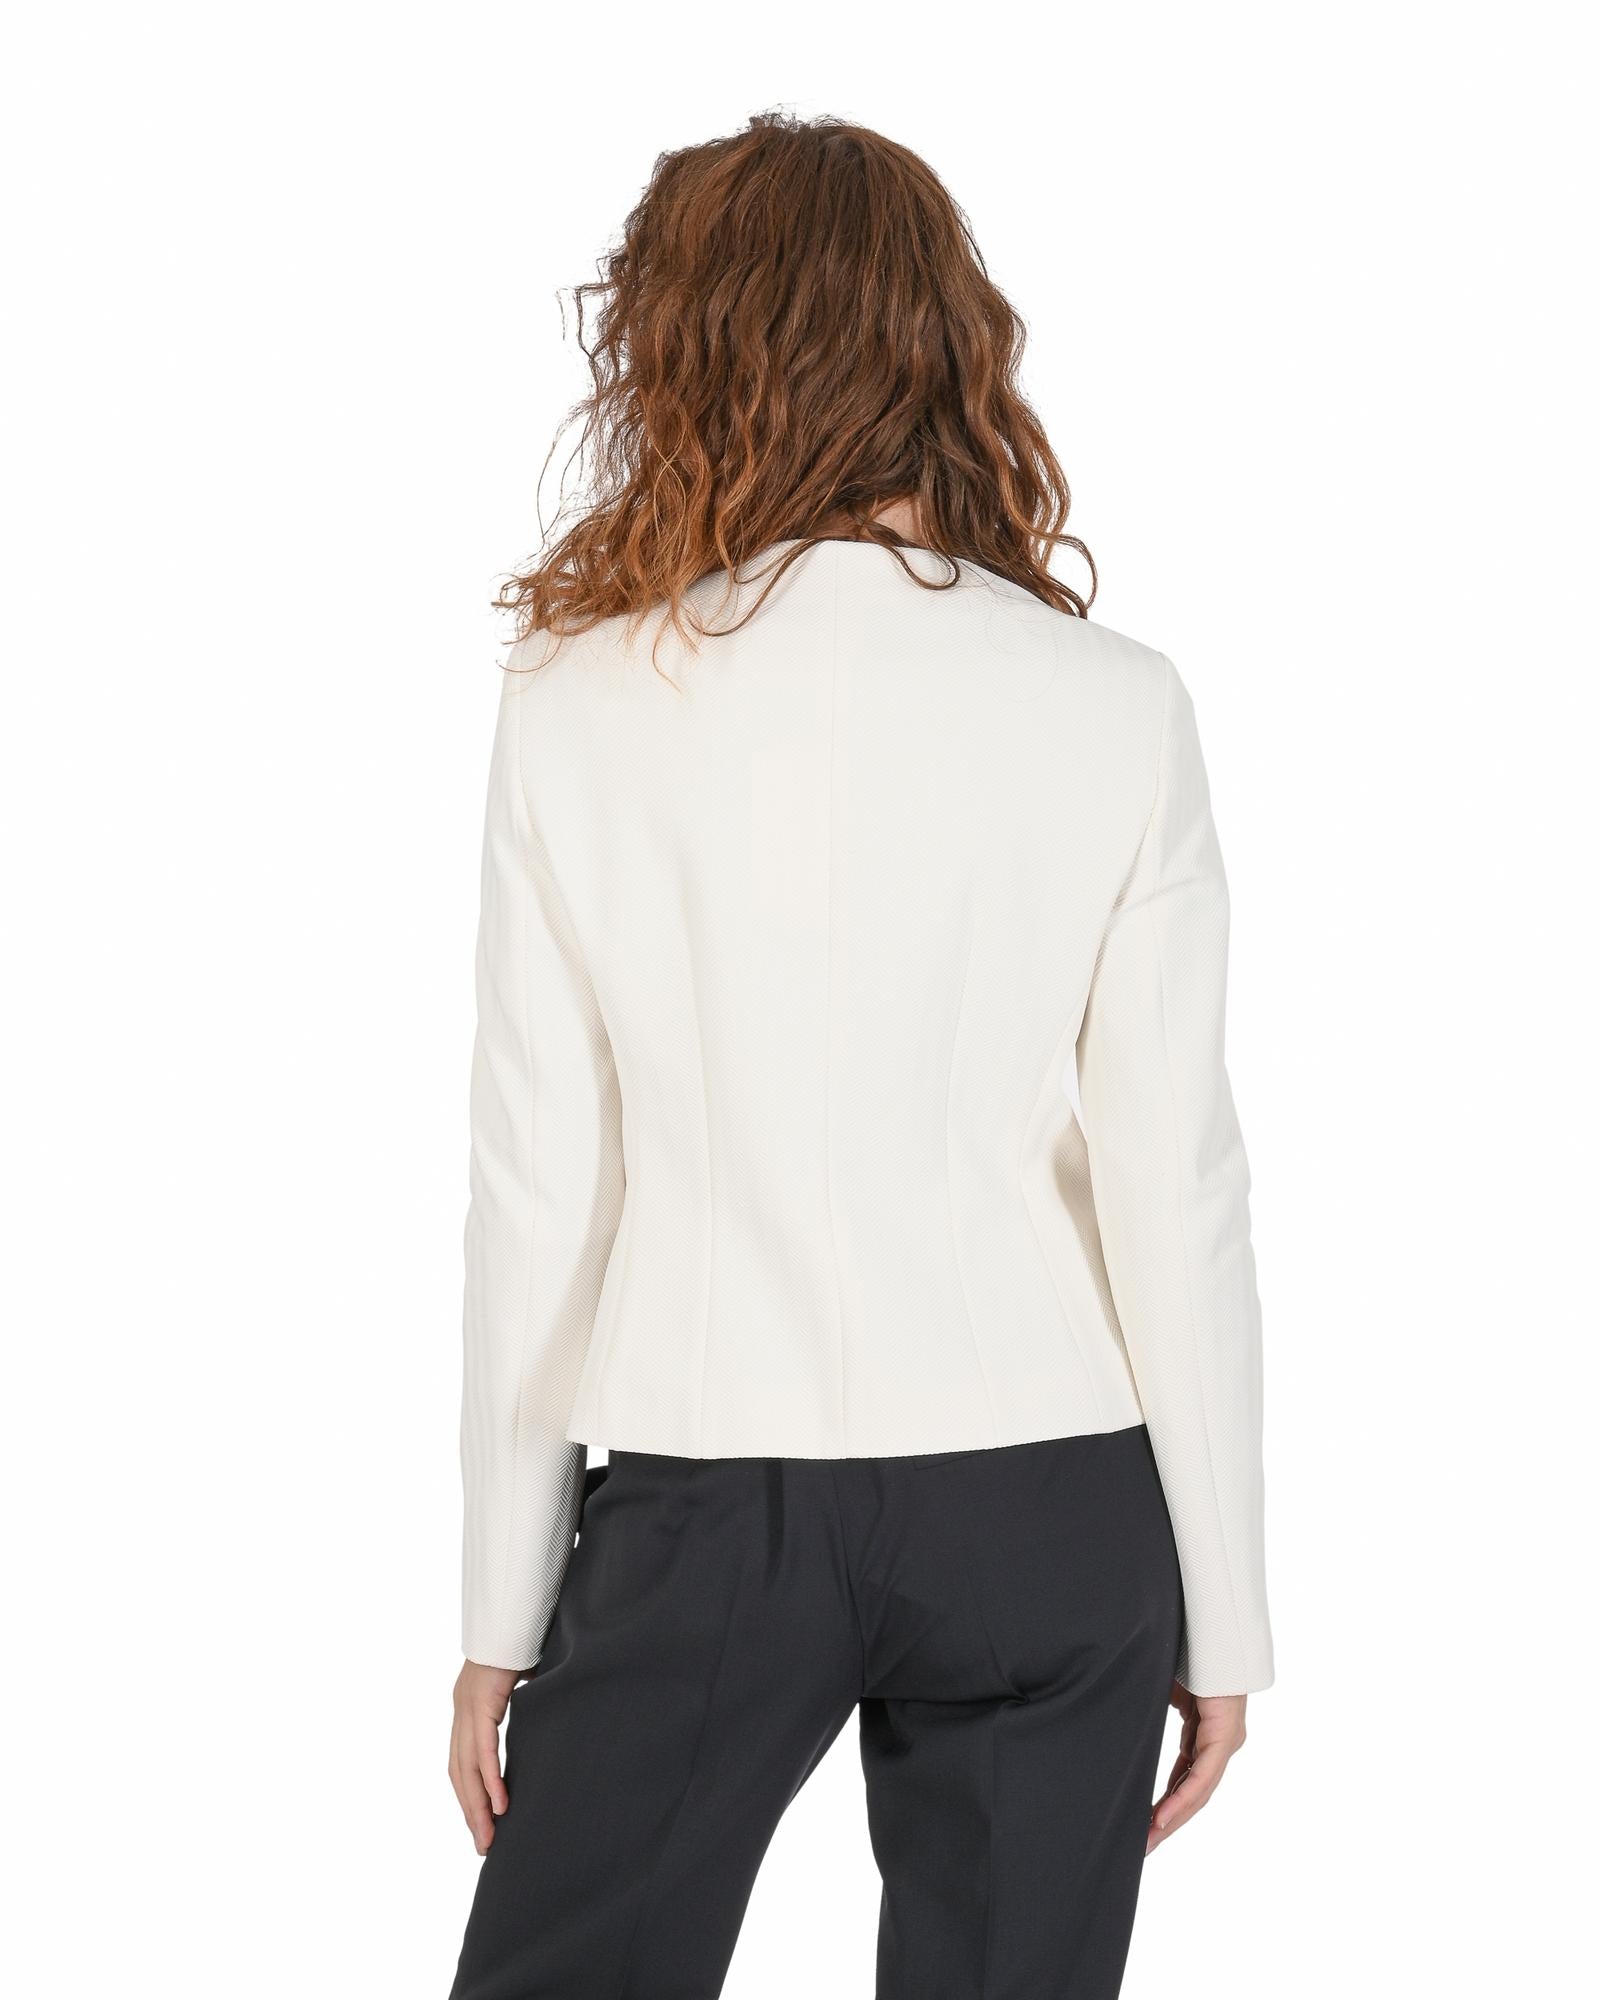 Hugo Boss Women's White Nylon Blend Jacket in White - 36 EU